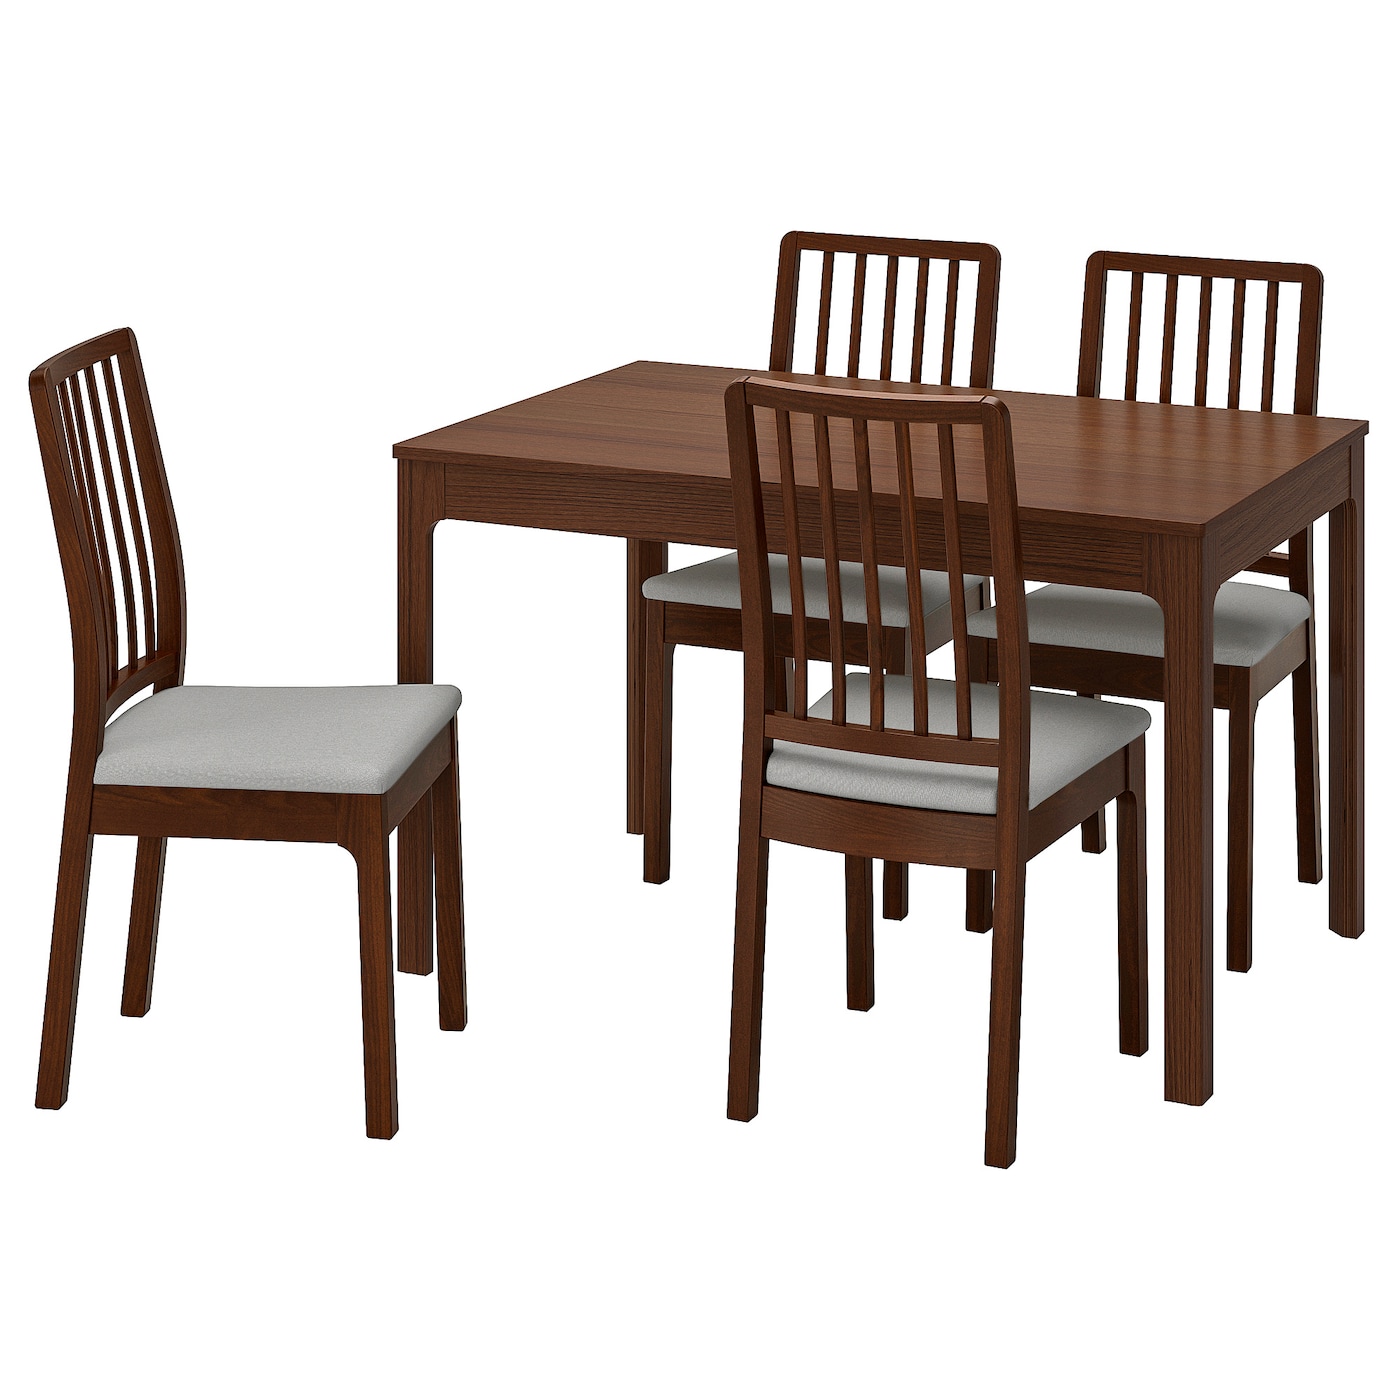 Стол и 4 стула - IKEA EKEDALEN/ЭКЕДАЛЕН ИКЕА, 120/180х80 см, коричневый/серый